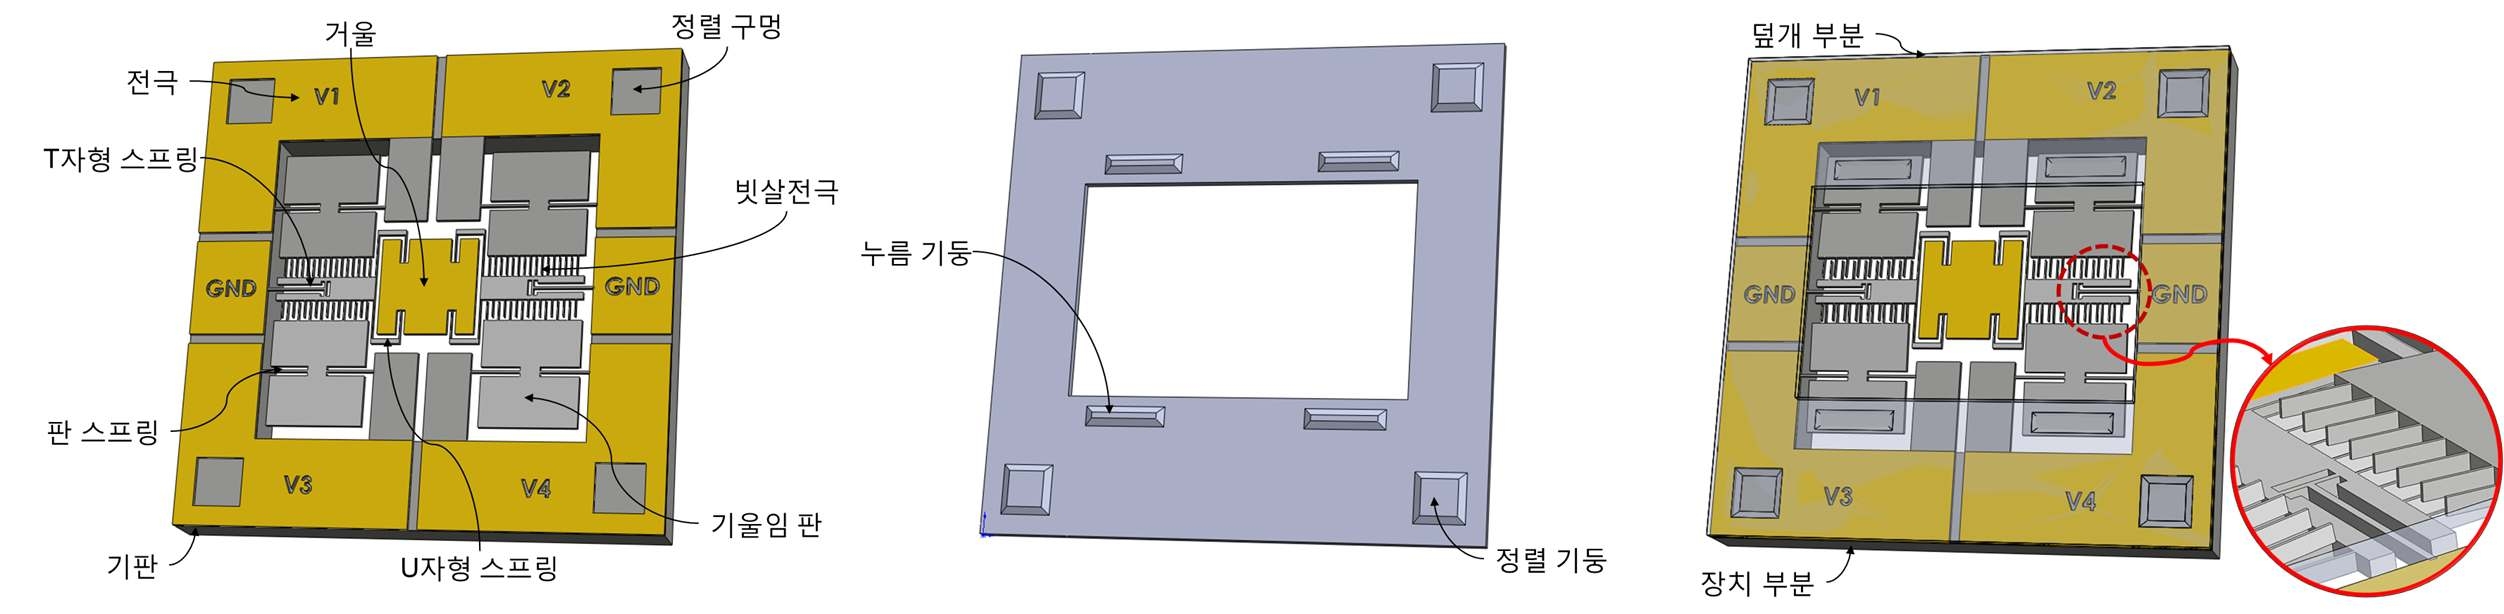 연계형 2-axis 스캐너; (a) 장치부분, (b) 덮개부분, (c) 결합 후 2-axis 스캐너